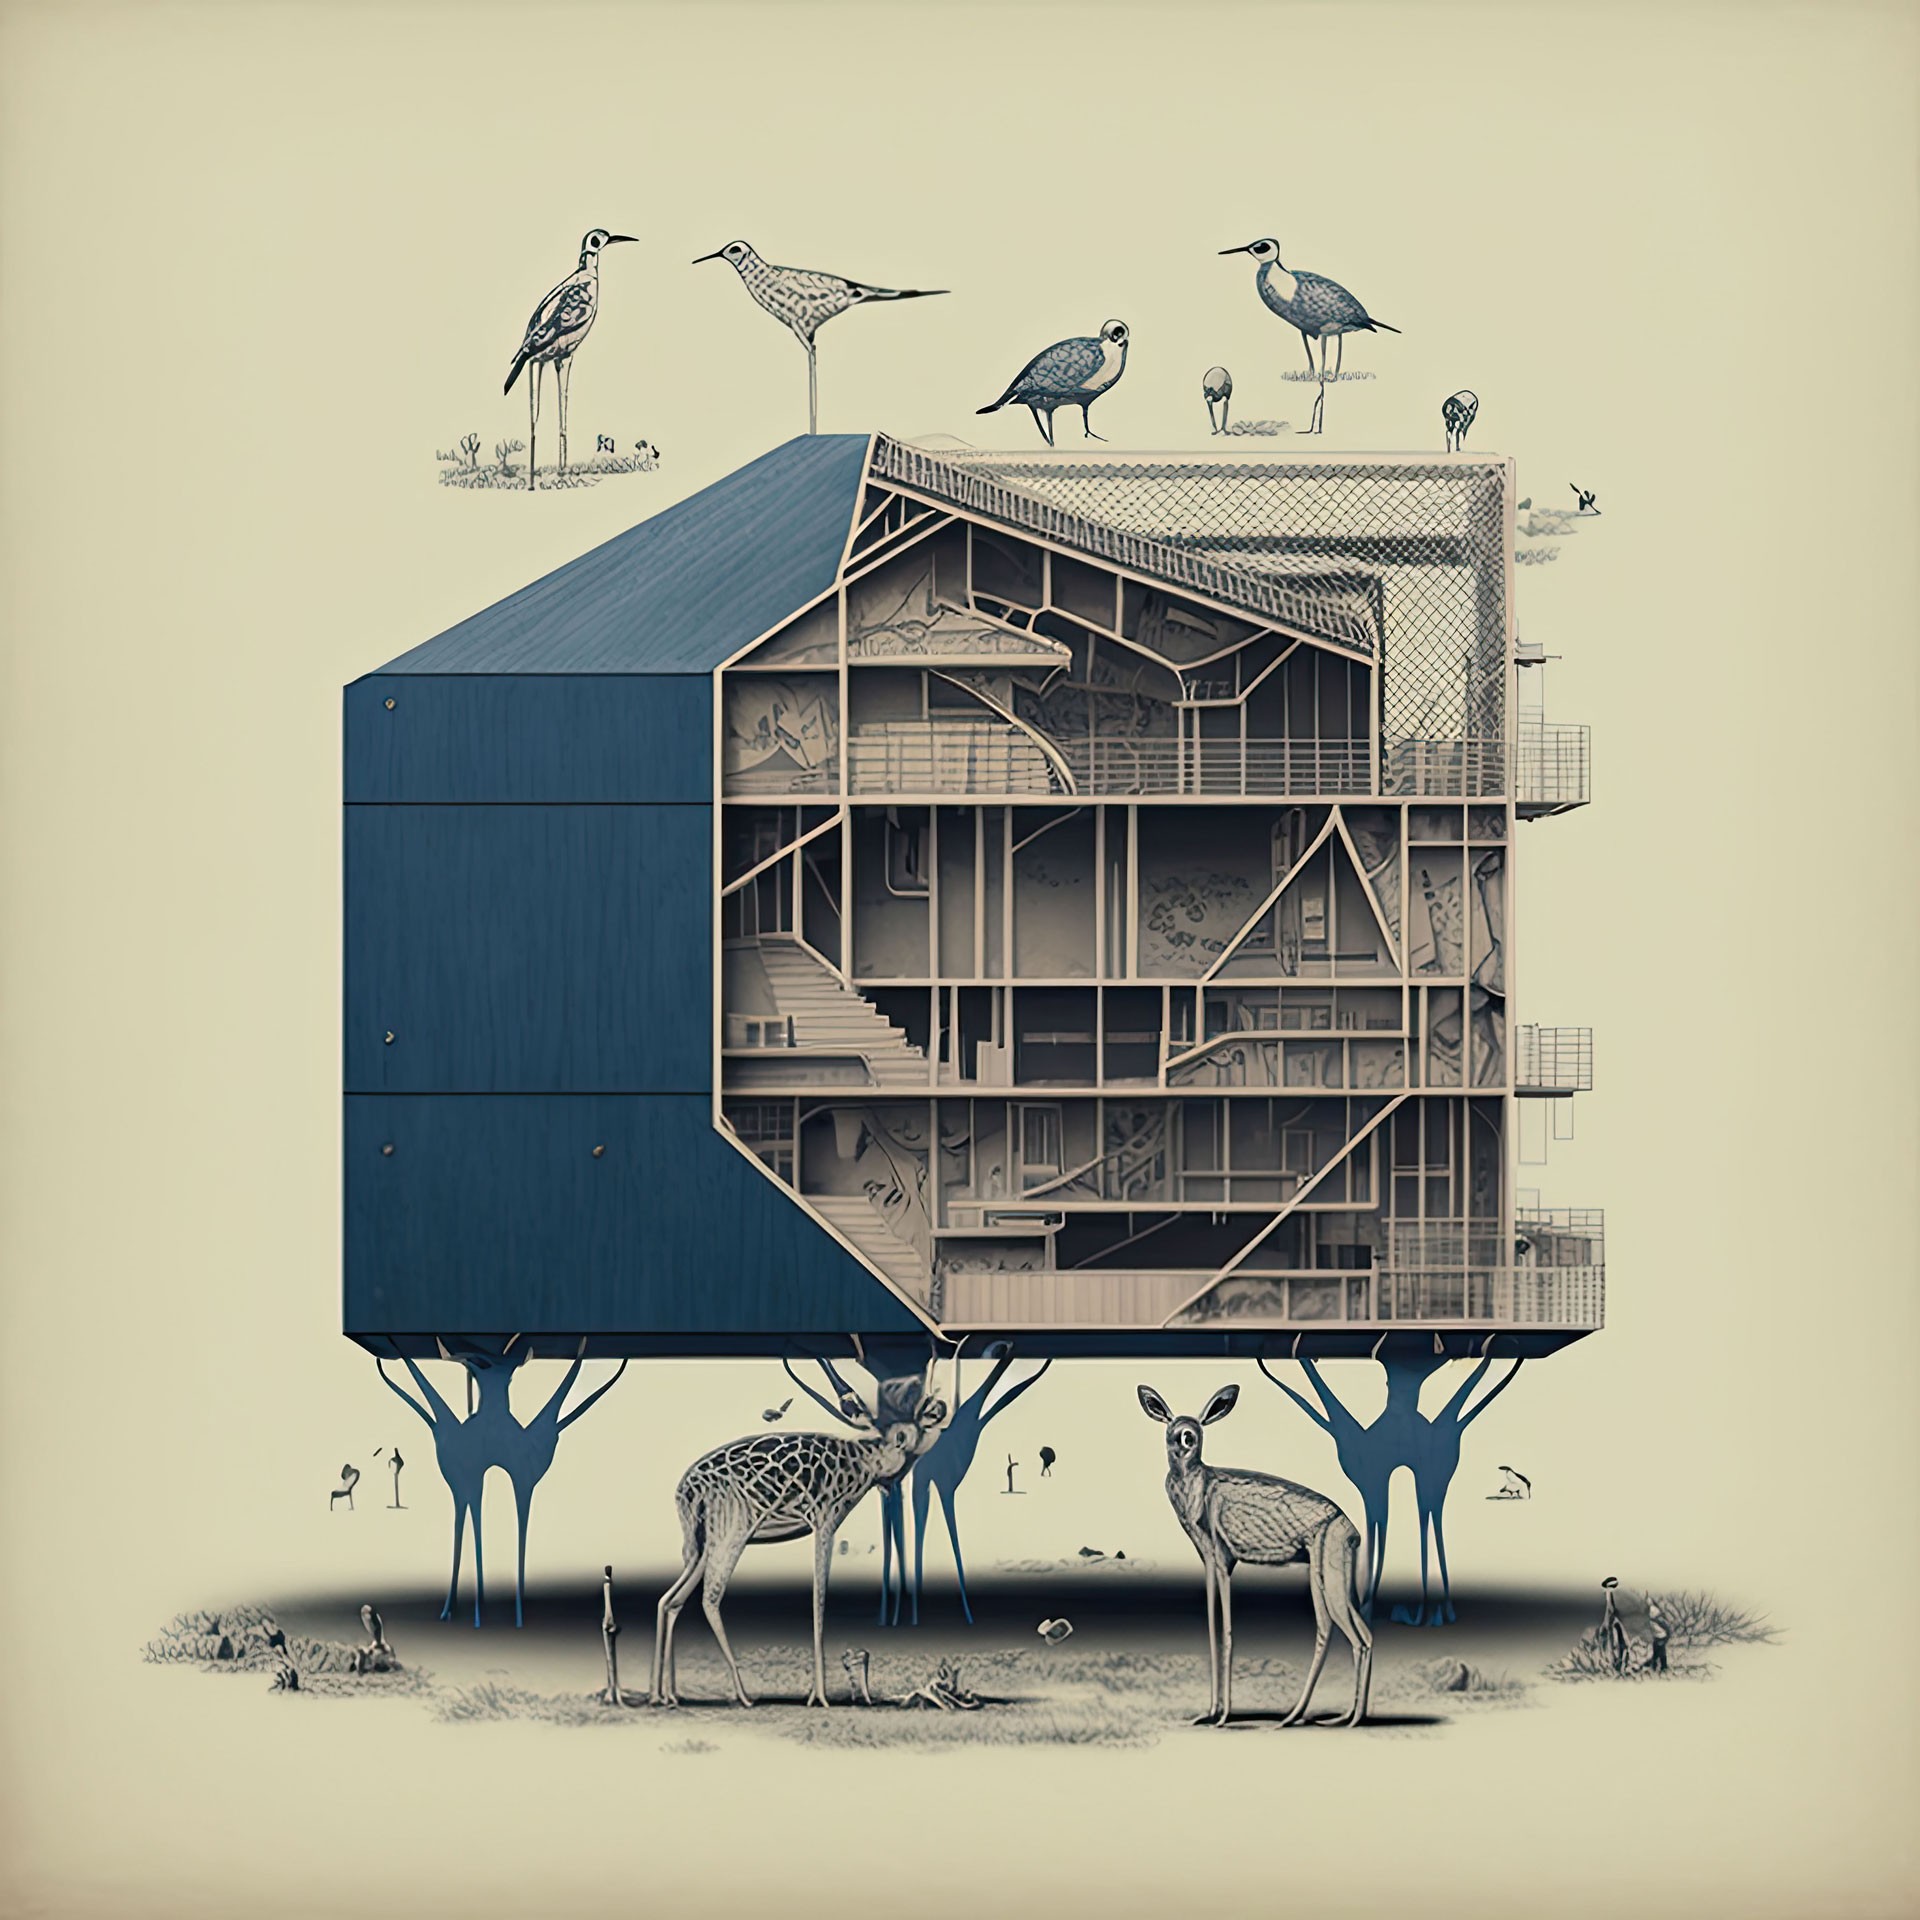 Haus im Längsschnitt, getragen von Rehen unter dem Haus, am Dach sind Vögel